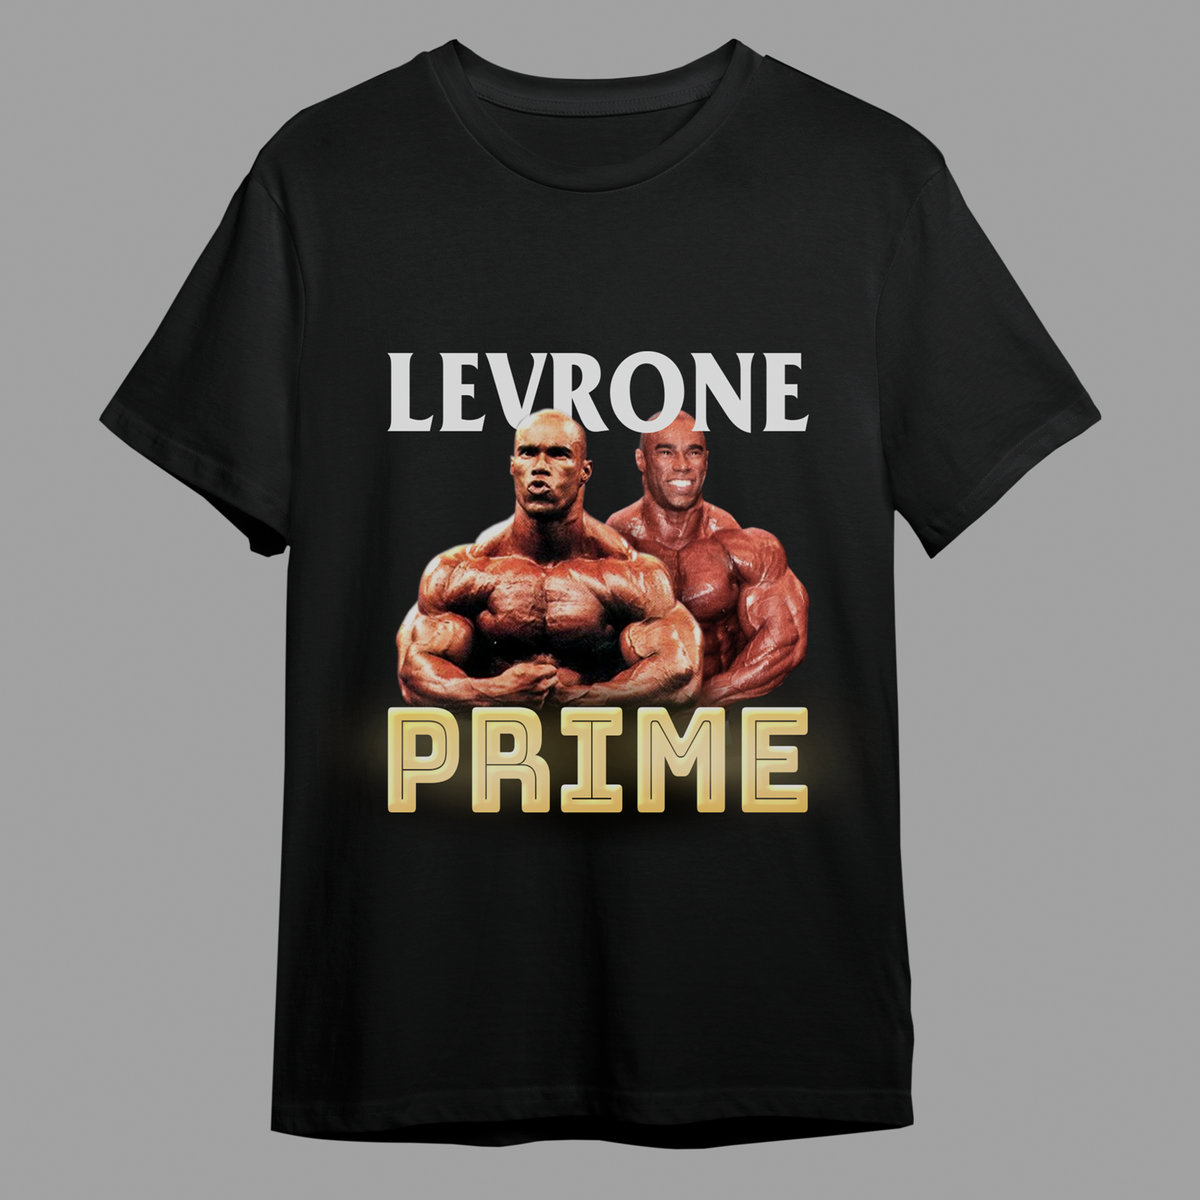 Nome do produto: Levrone prime